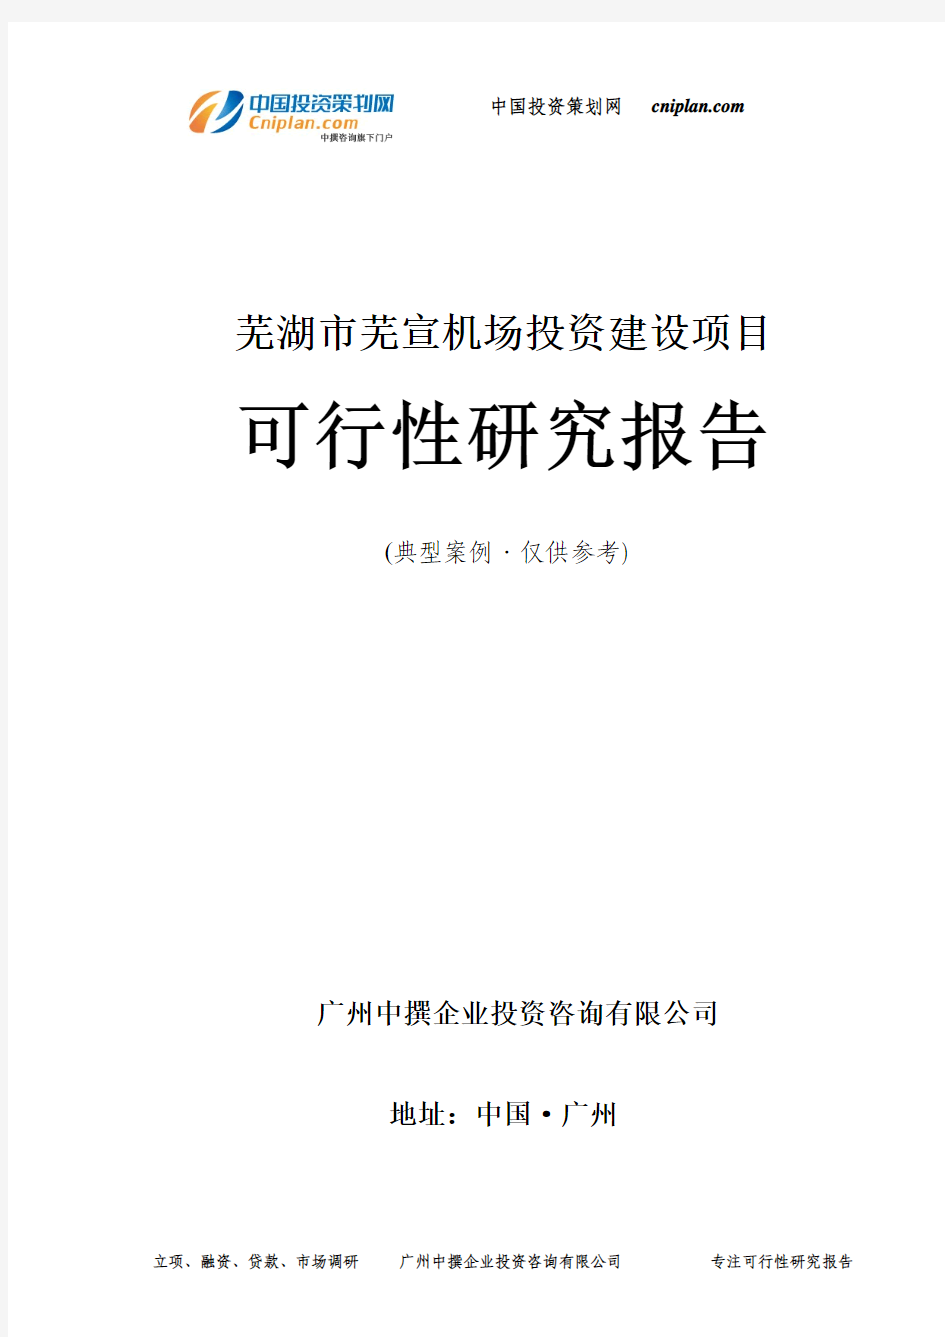 芜湖市芜宣机场投资建设项目可行性研究报告-广州中撰咨询